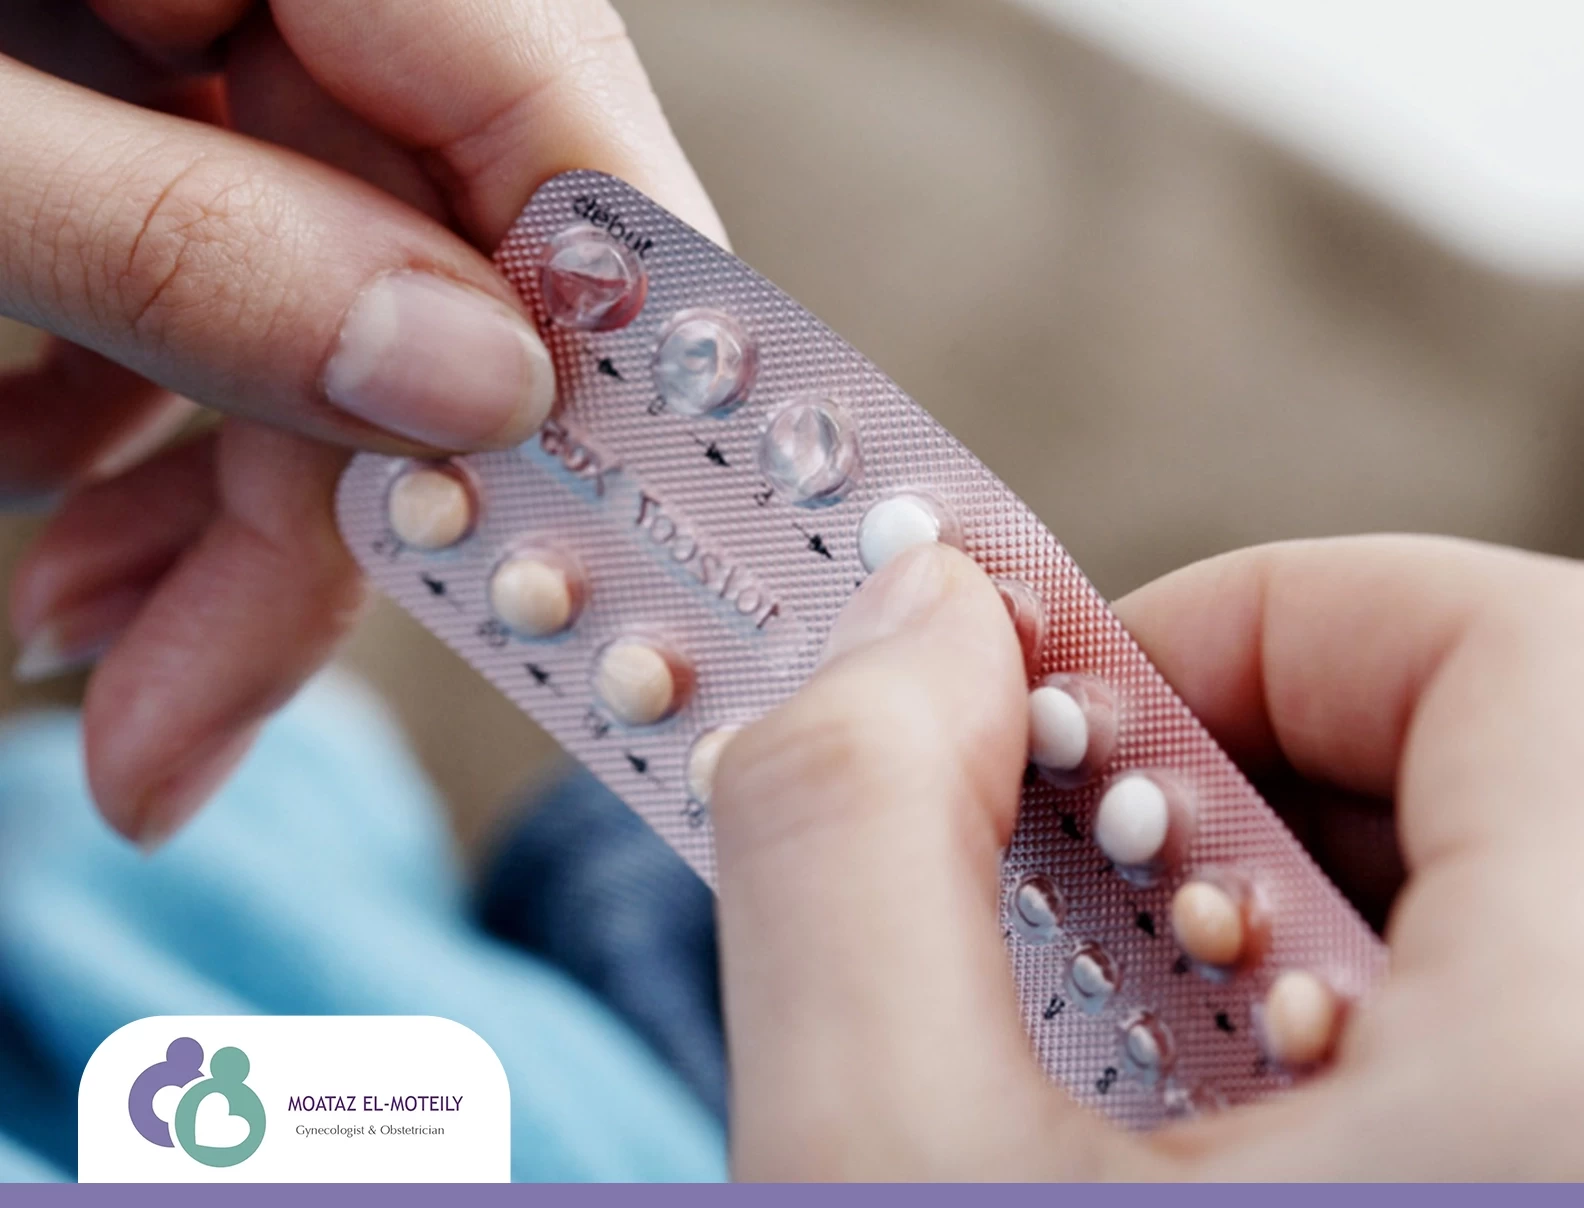 وسائل منع الحمل (Contraception)